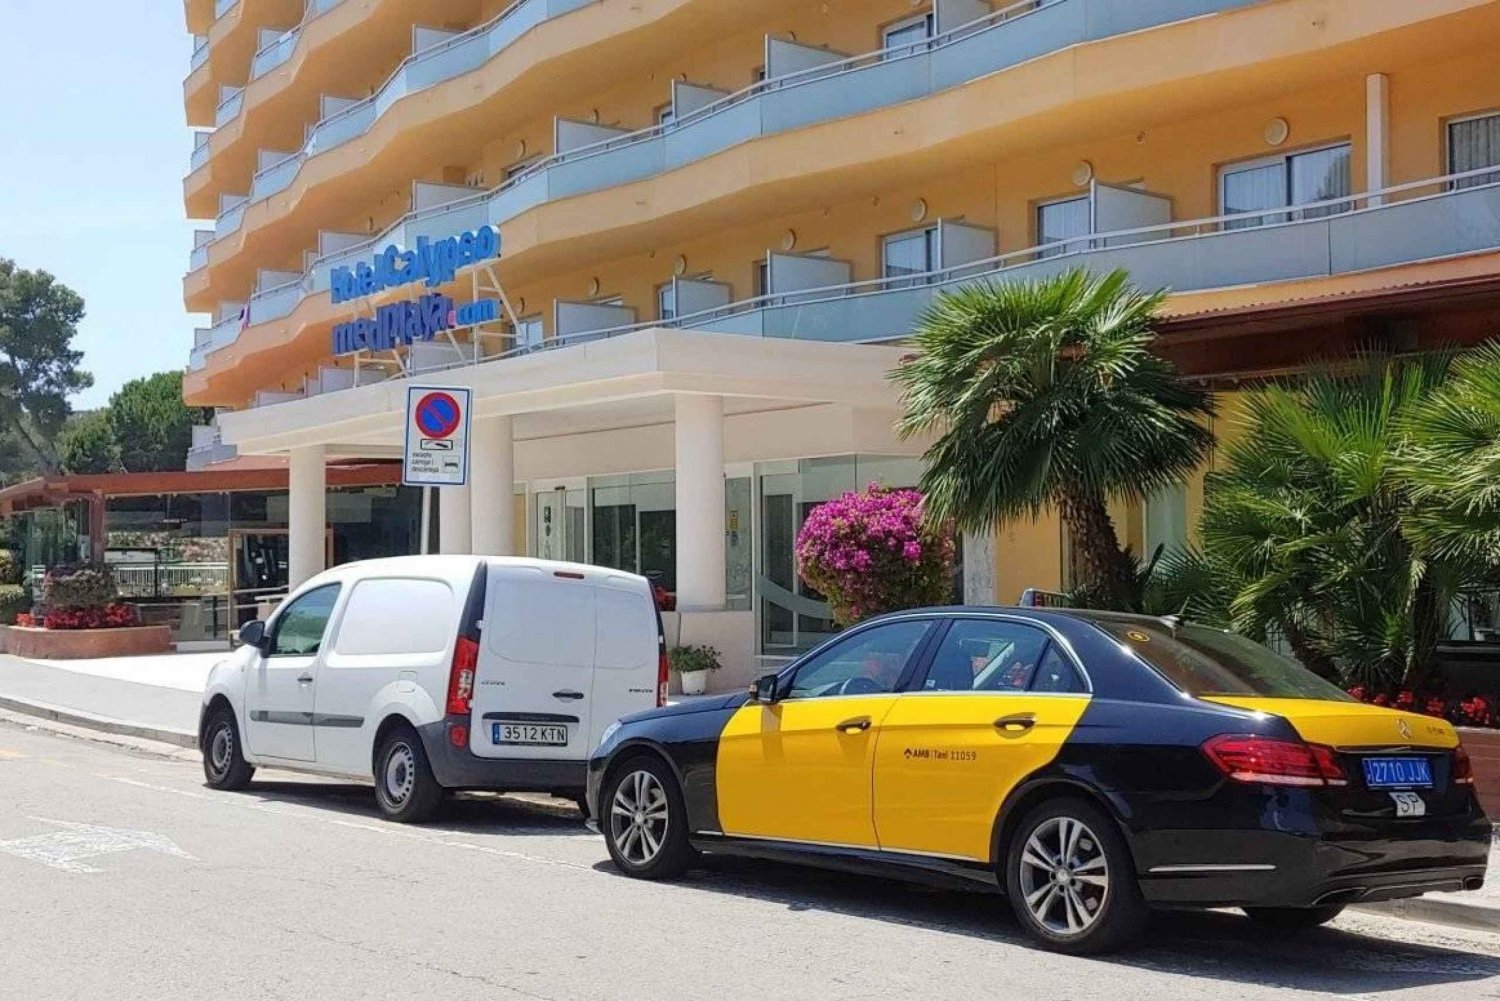 Lotnisko w Barcelonie: Zarezerwuj transfer taksówką do hotelu